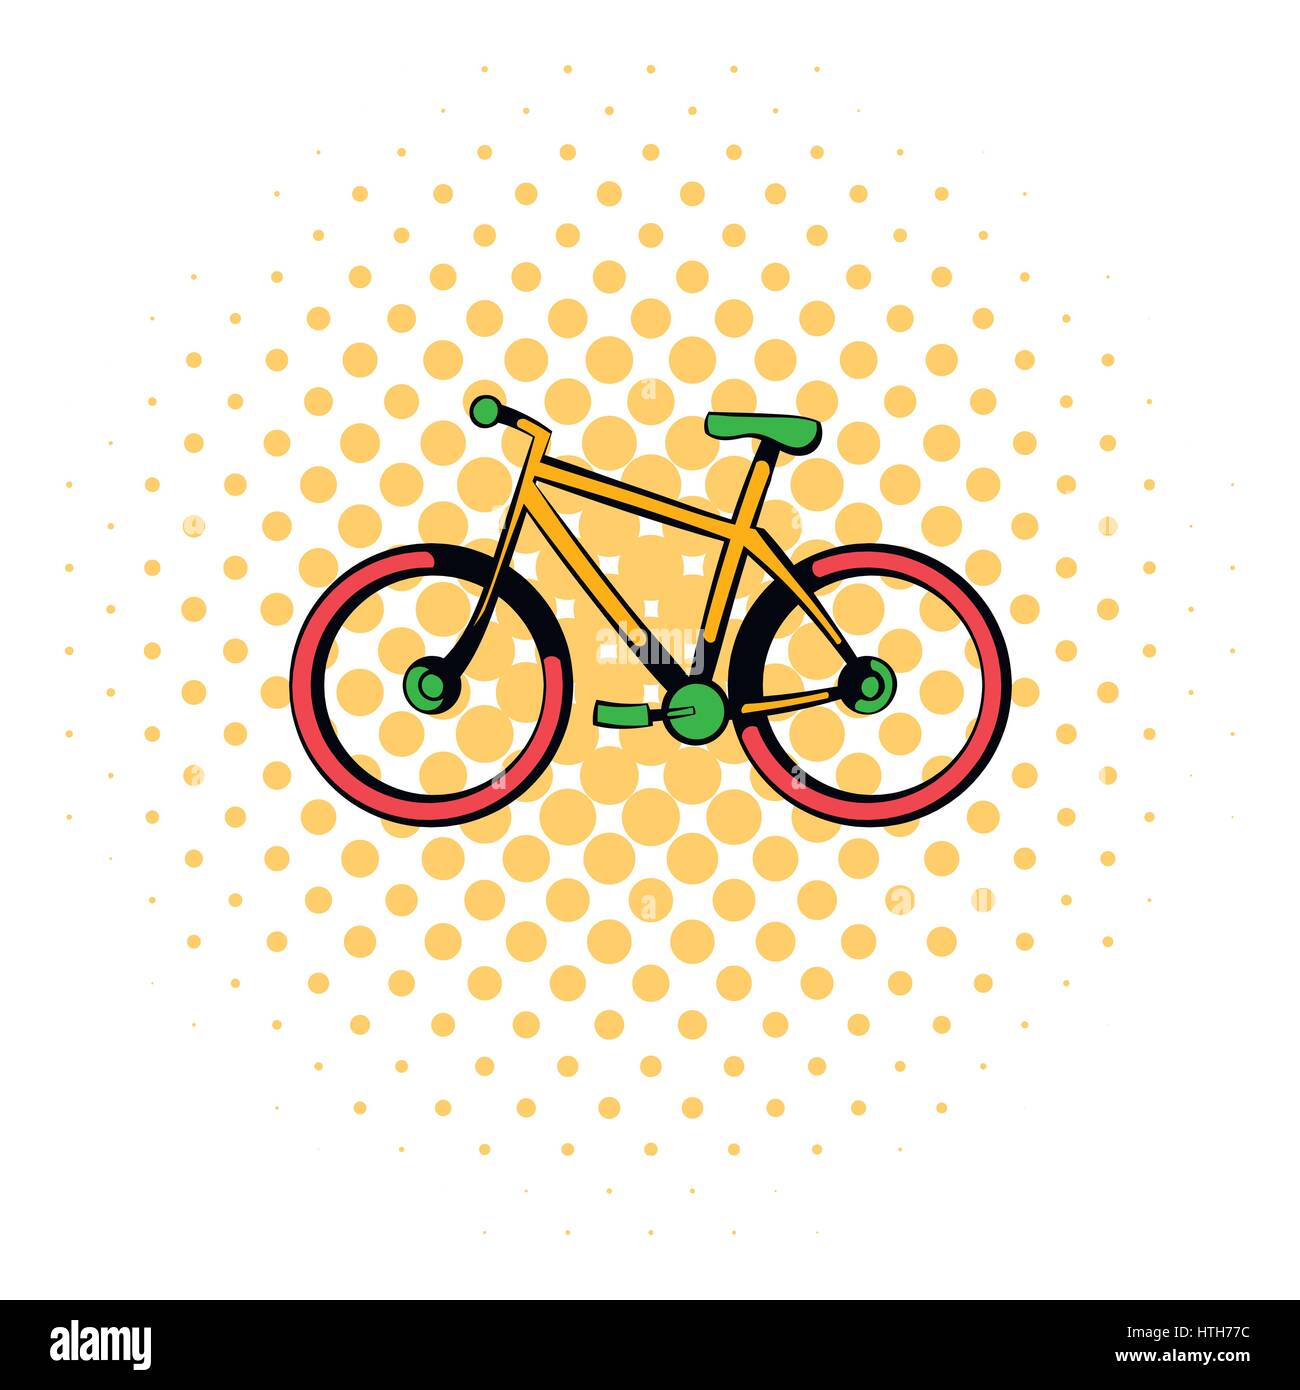 Icona Di Bicicletta Stile Fumetto Immagine E Vettoriale Alamy